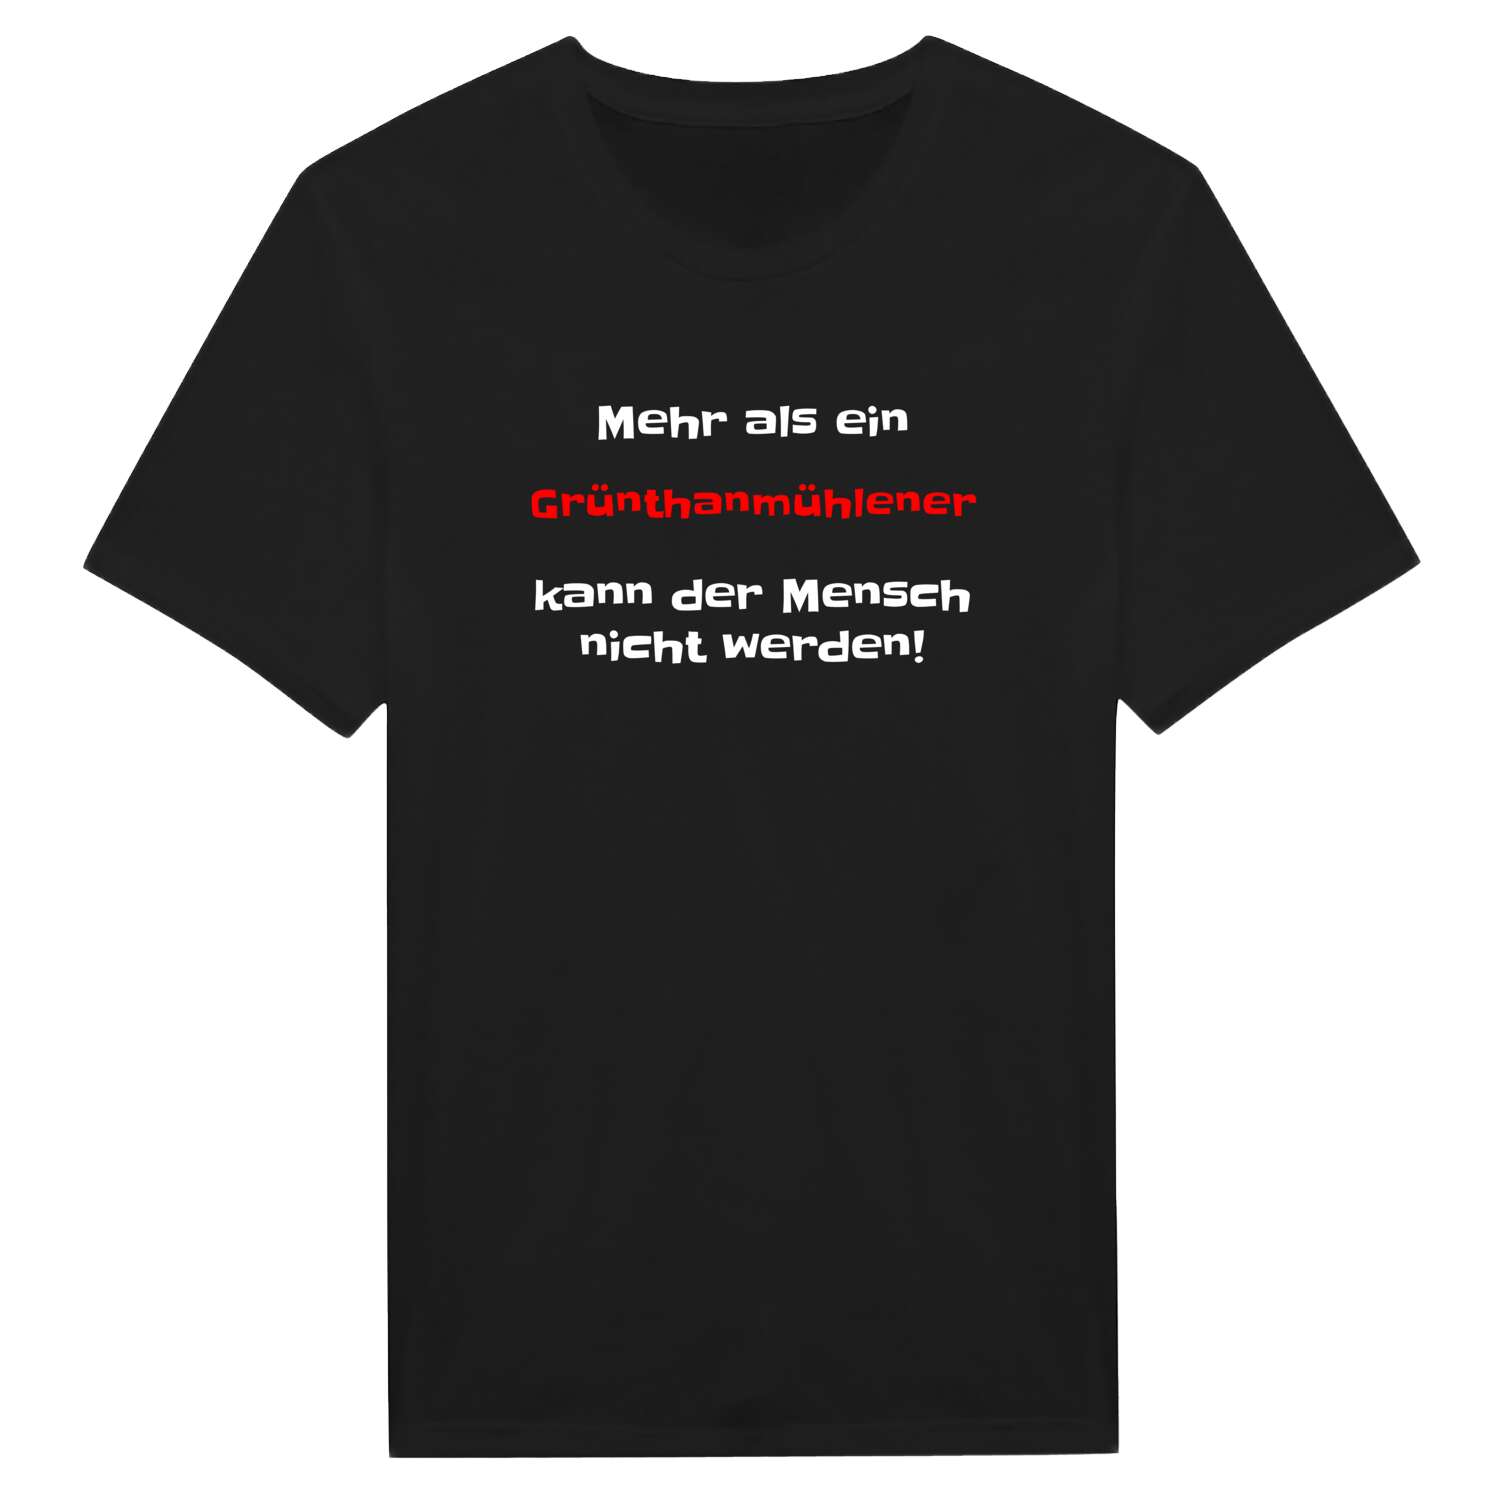 Grünthanmühle T-Shirt »Mehr als ein«